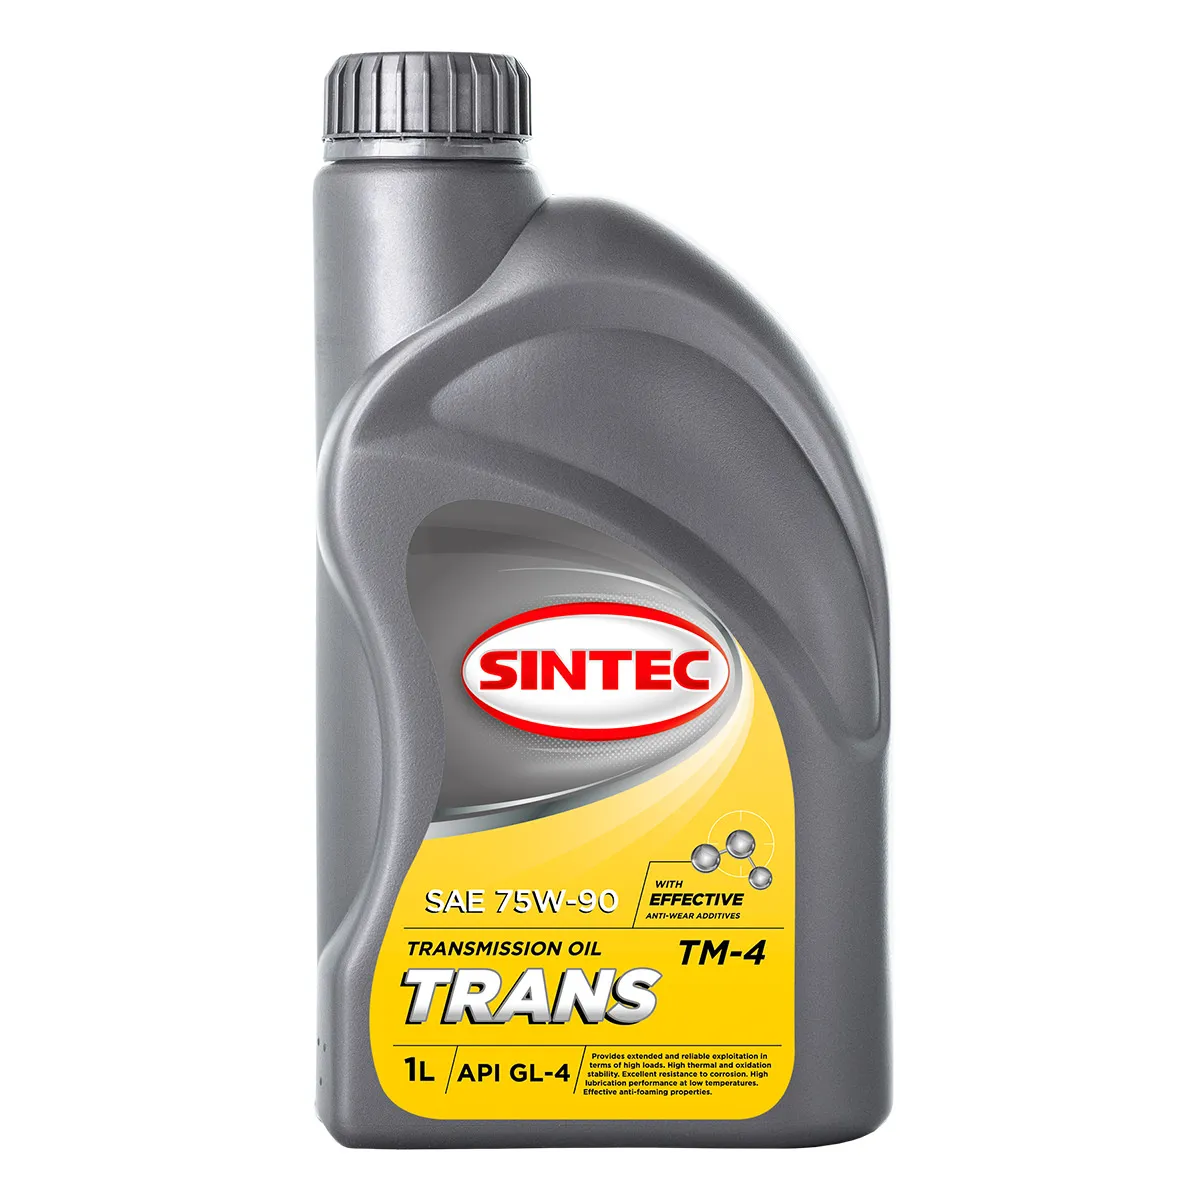 Трансмиссионное масло SINTEC TRANS ТМ4 SAE 75W-90 API GL-4 Трансмиссионные масла: описание, применение, свойства, где купить